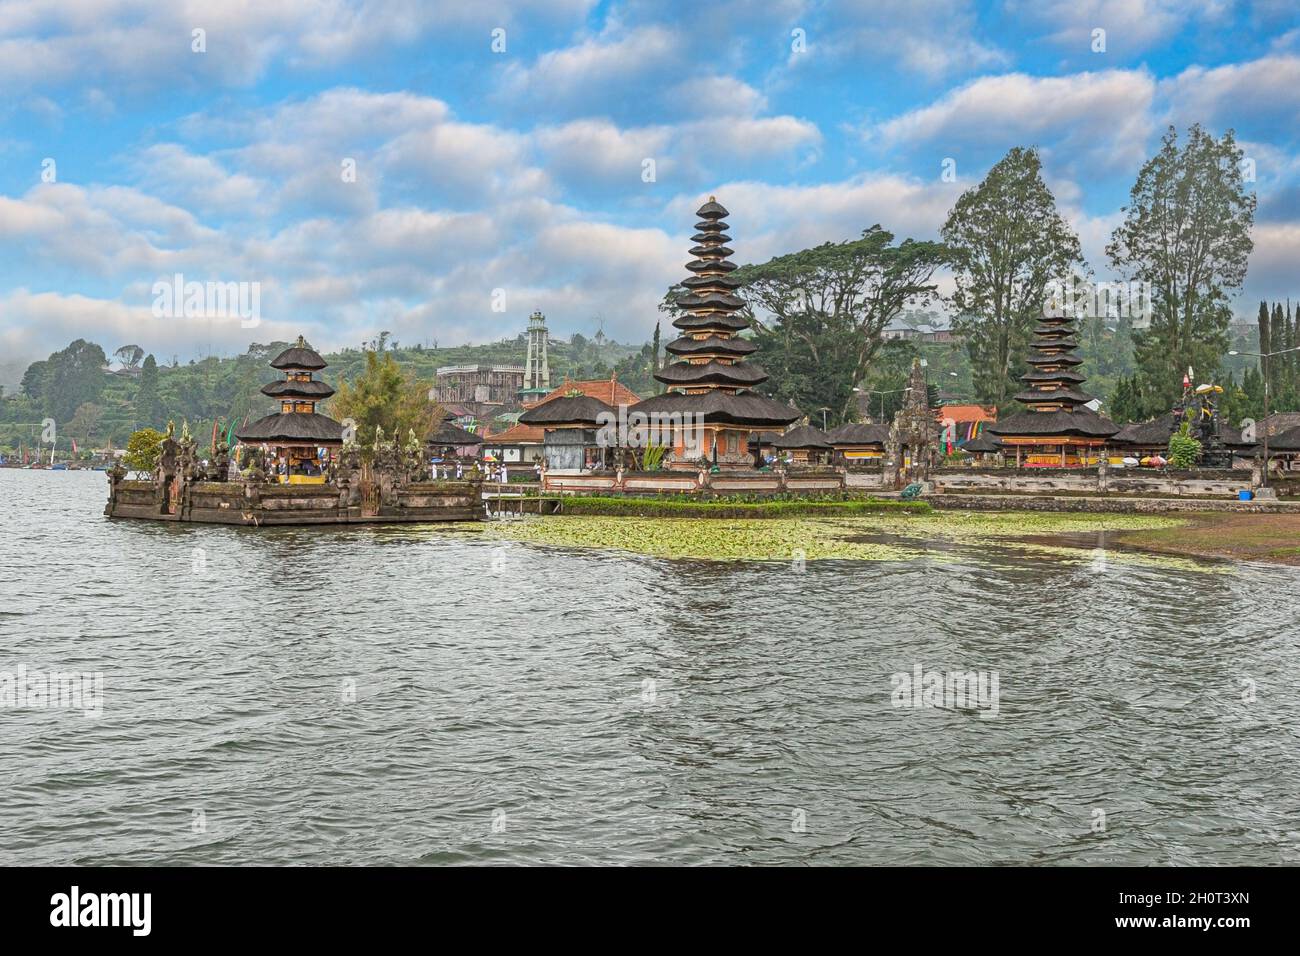 Picture of Pura Ulun Danu Bratan temple complex at Banau Beratan lake on the Indonesian island Bali Stock Photo